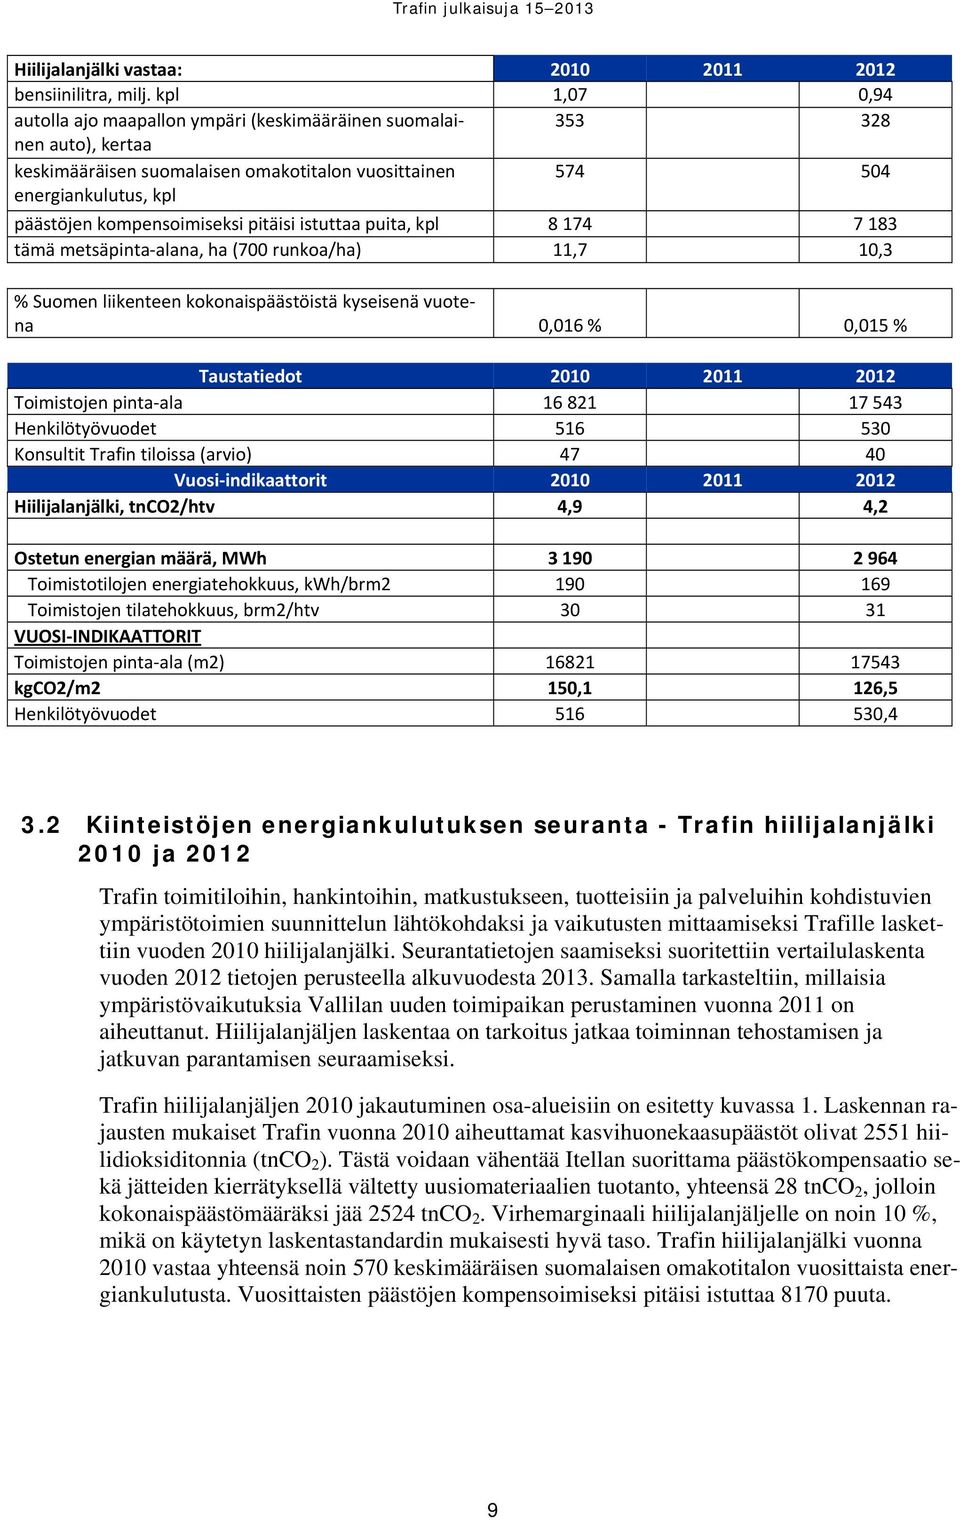 kompensoimiseksi pitäisi istuttaa puita, kpl 8 174 7 183 tämä metsäpinta alana, ha (700 runkoa/ha) 11,7 10,3 % Suomen liikenteen kokonaispäästöistä kyseisenä vuotena 0,016 % 0,015 % Taustatiedot 2010